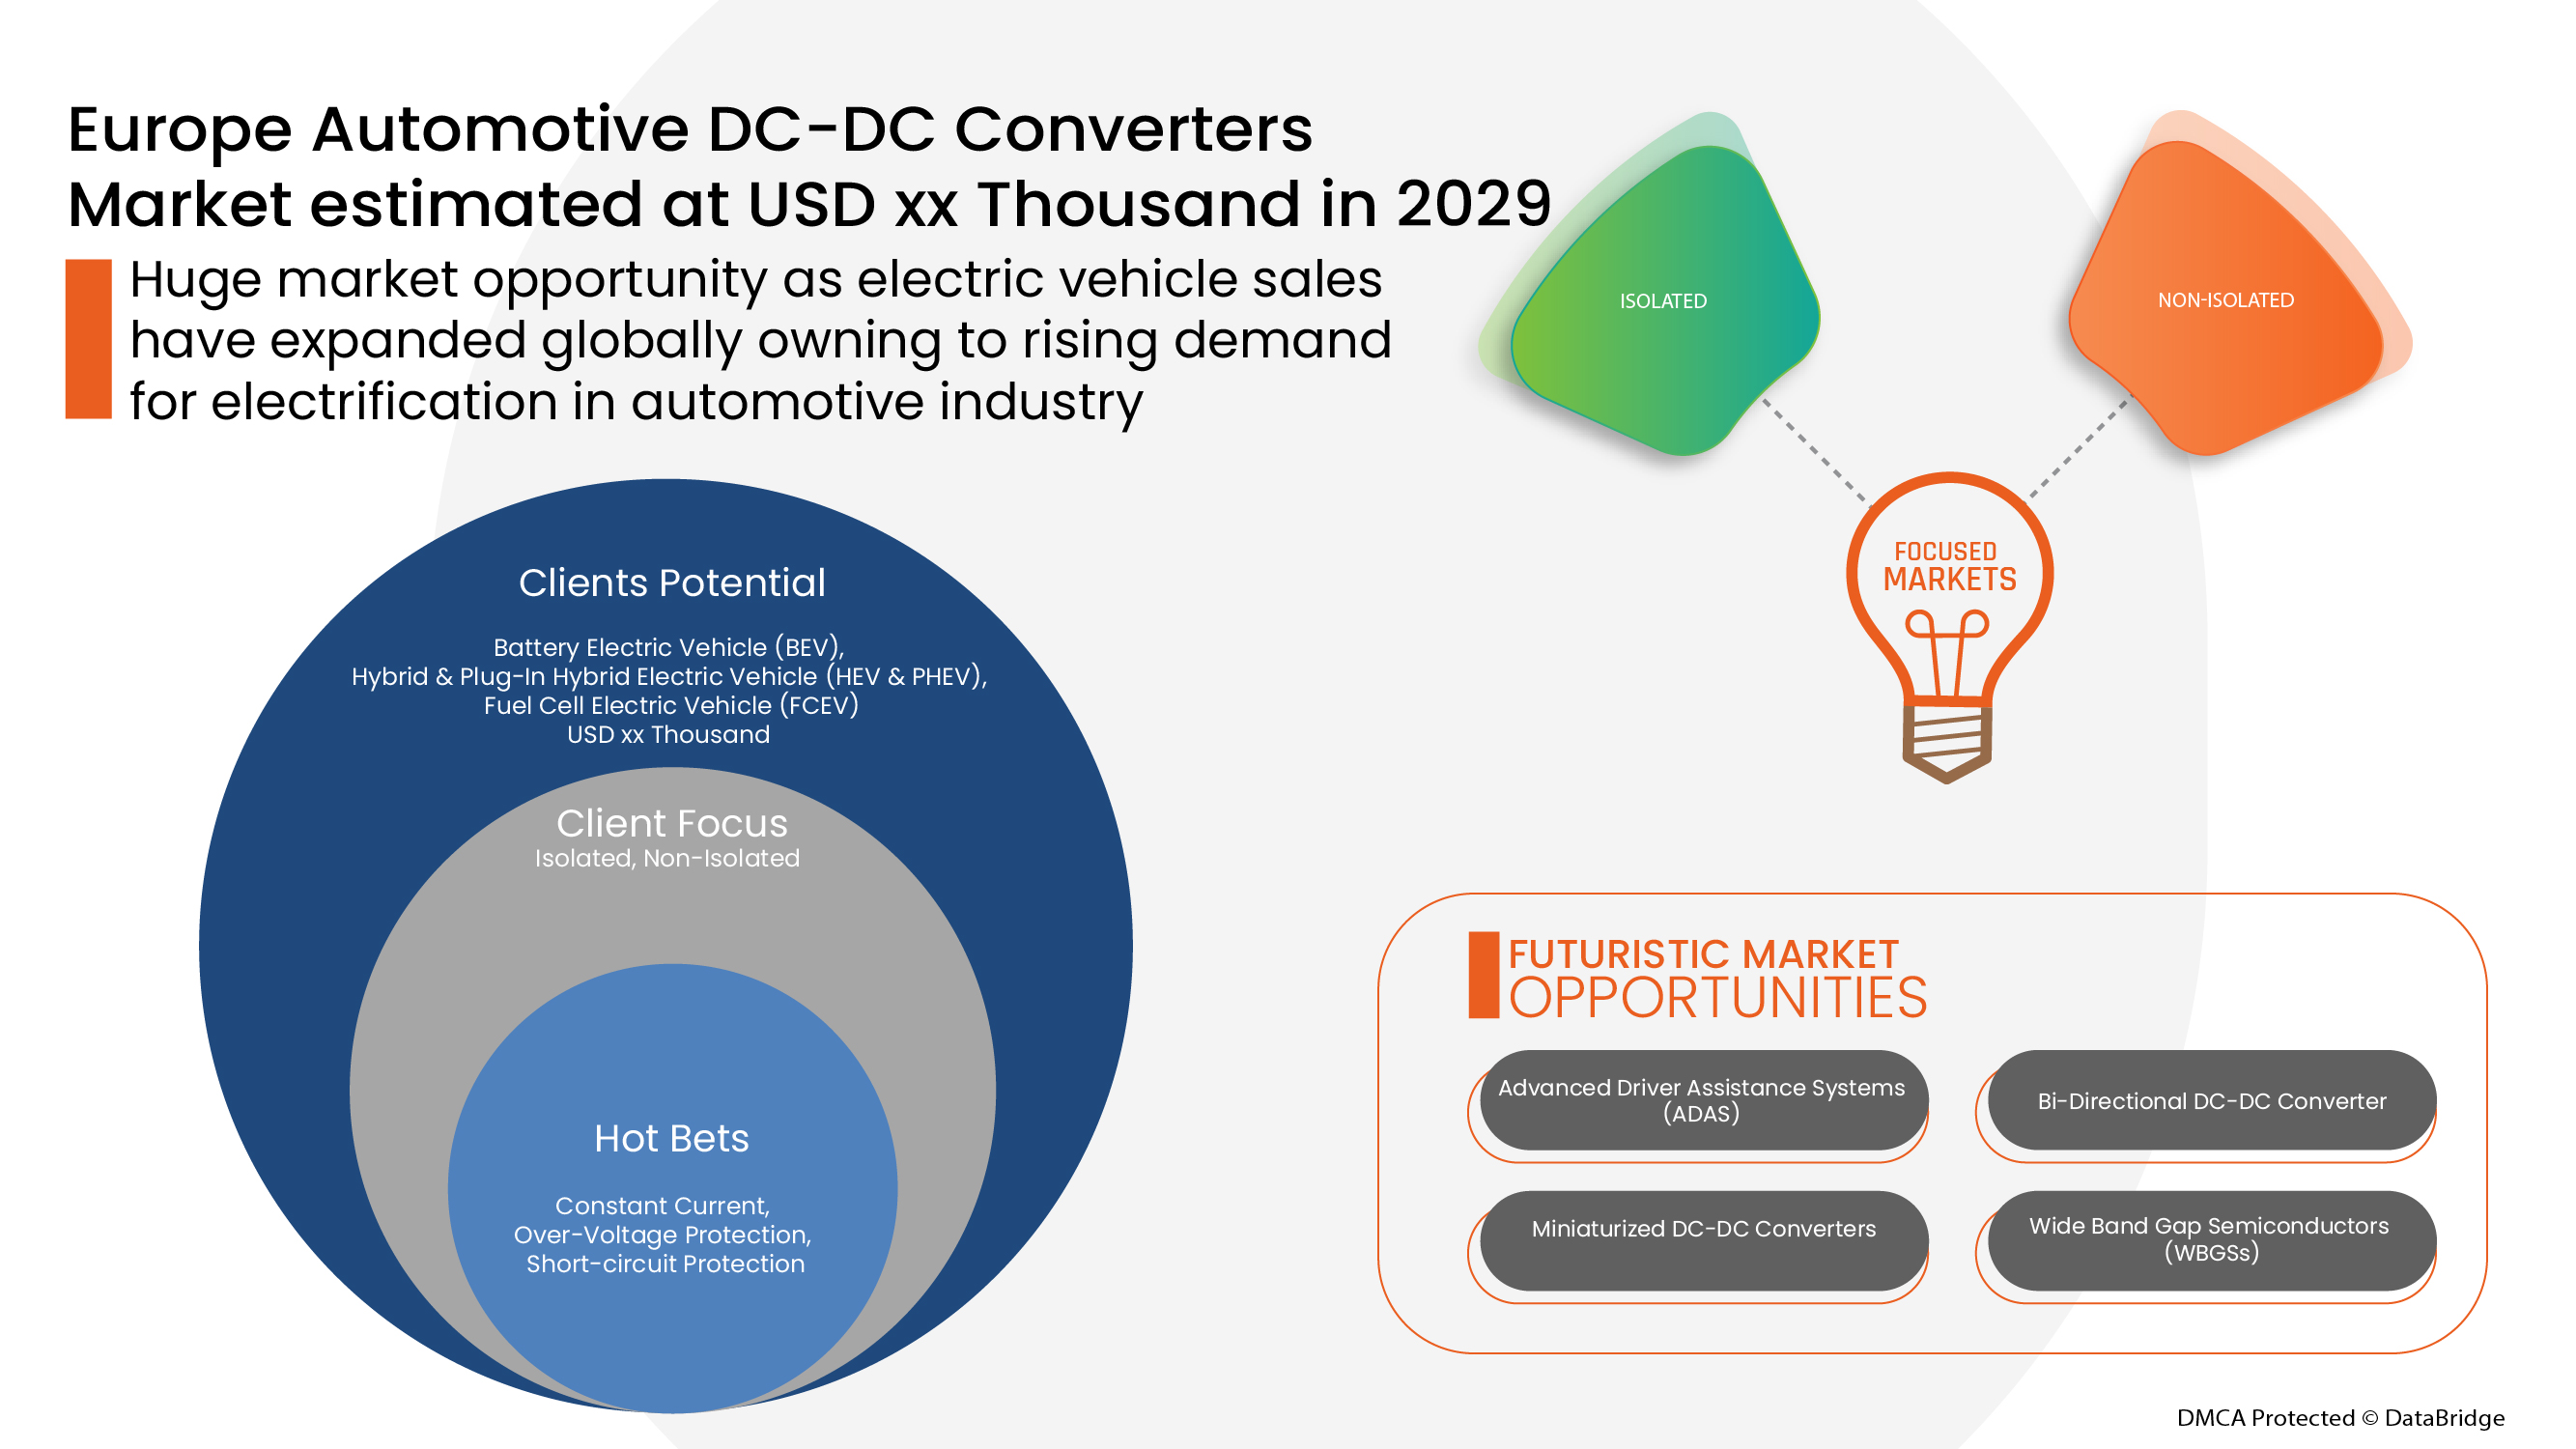 Europe Automotive DC-DC Converters Market